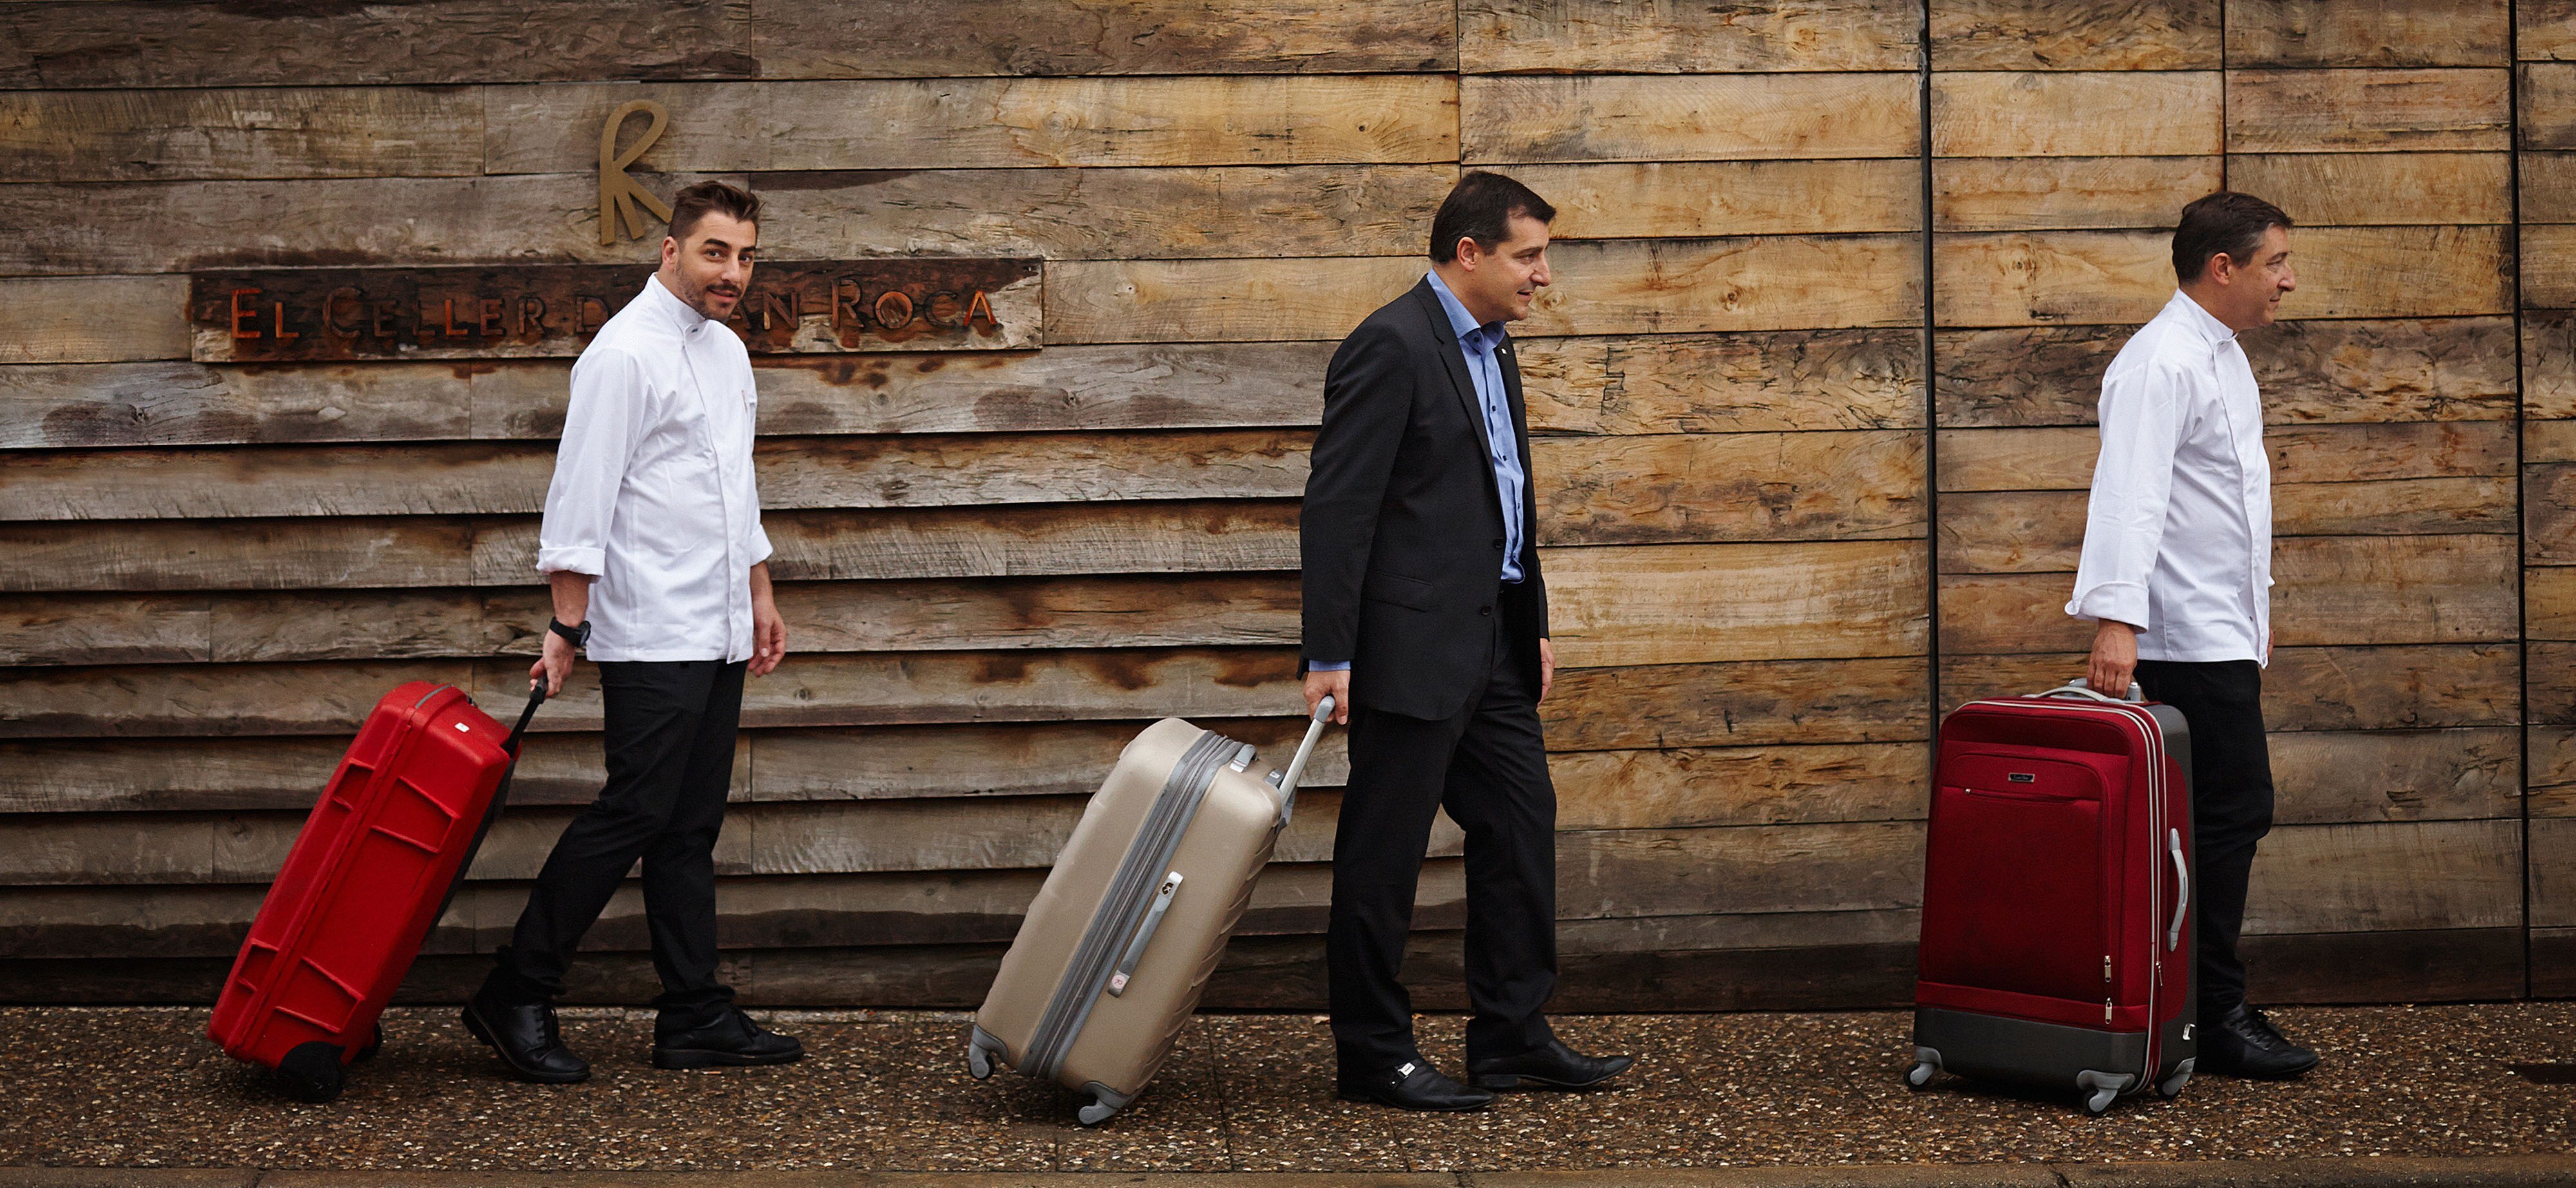 Fotografía de los hermanos Roca con maletas Gira BBVA- El Celler de Can Roca